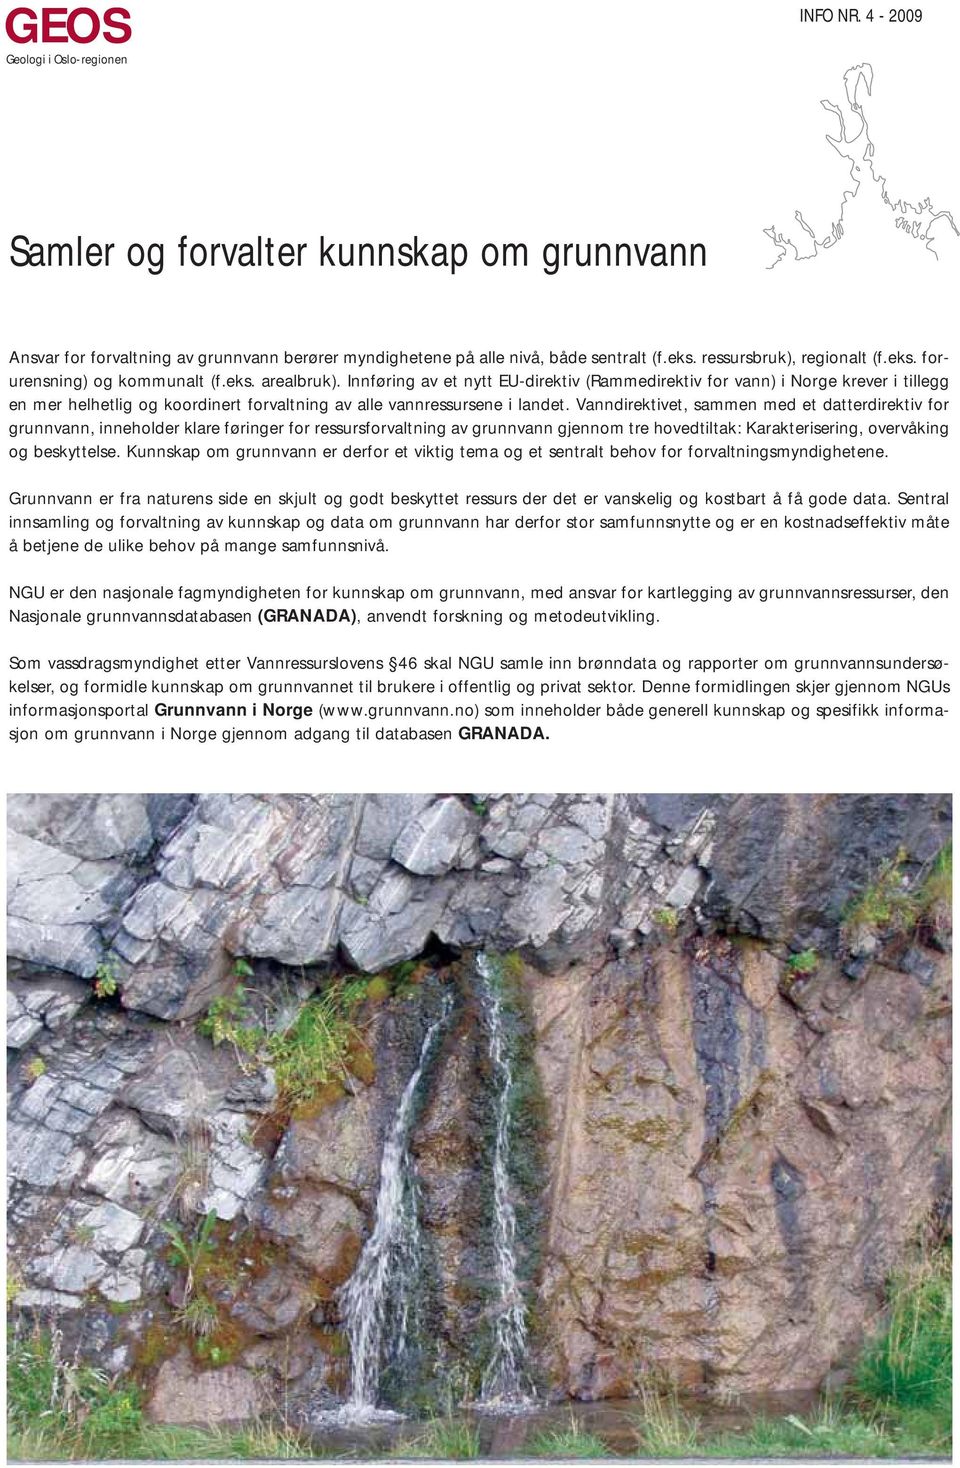 Innføring av et nytt EU-direktiv (Rammedirektiv for vann) i Norge krever i tillegg en mer helhetlig og koordinert forvaltning av alle vannressursene i landet.